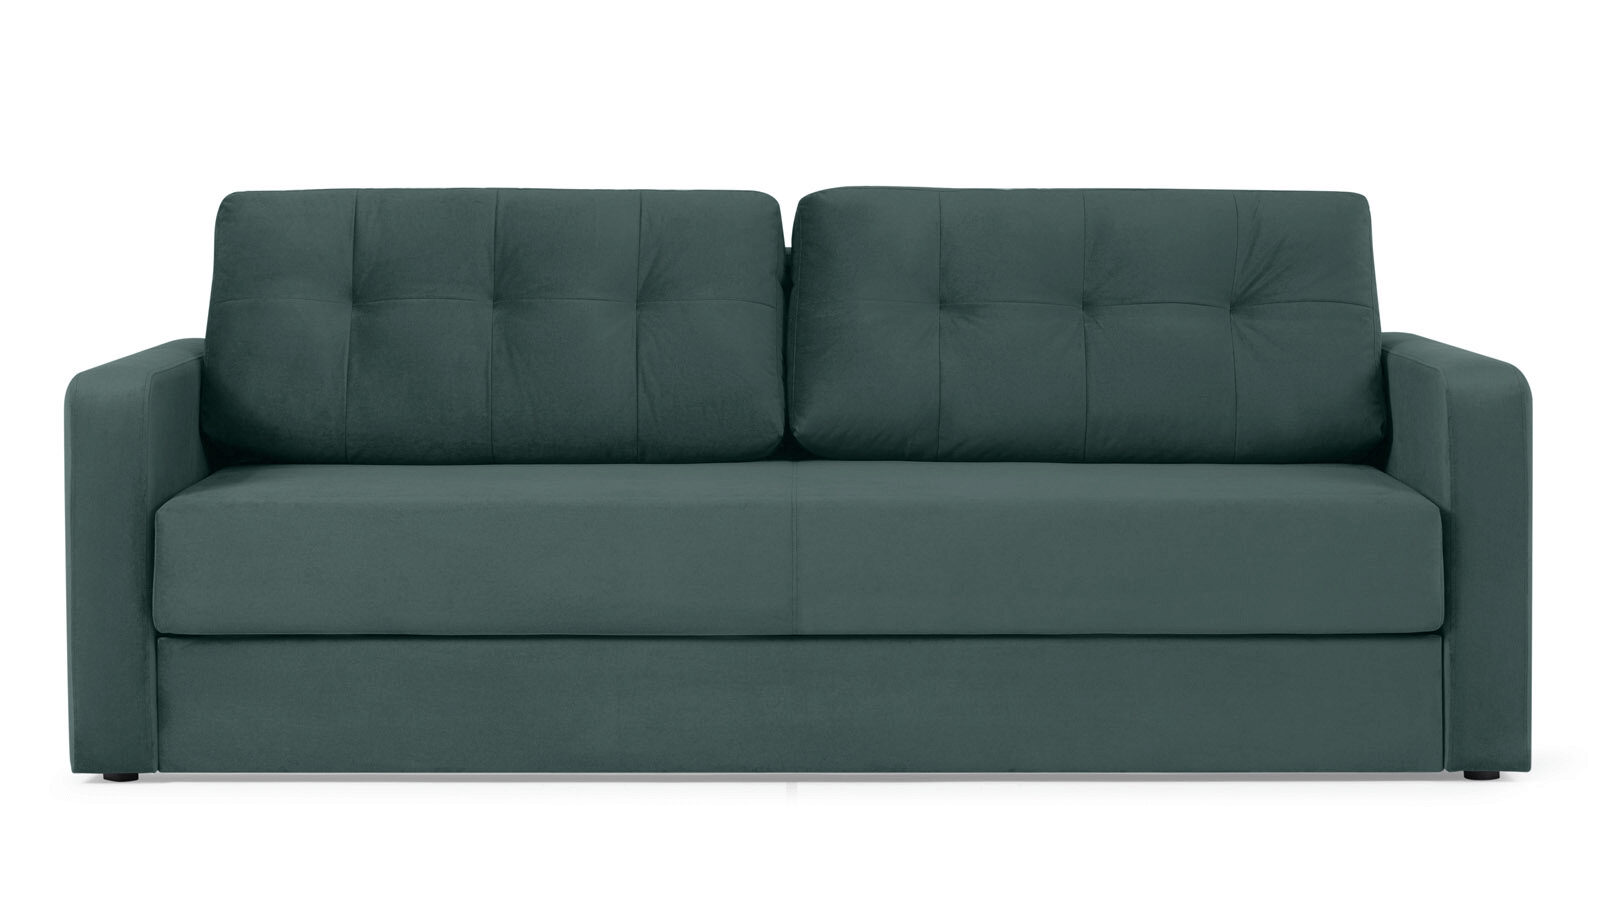 Прямой диван Loko Pro с широкими подлокотниками, с матрасом комбинированной жесткости надувной диван maclay ламзак 190т 180х70х45 см салатовый